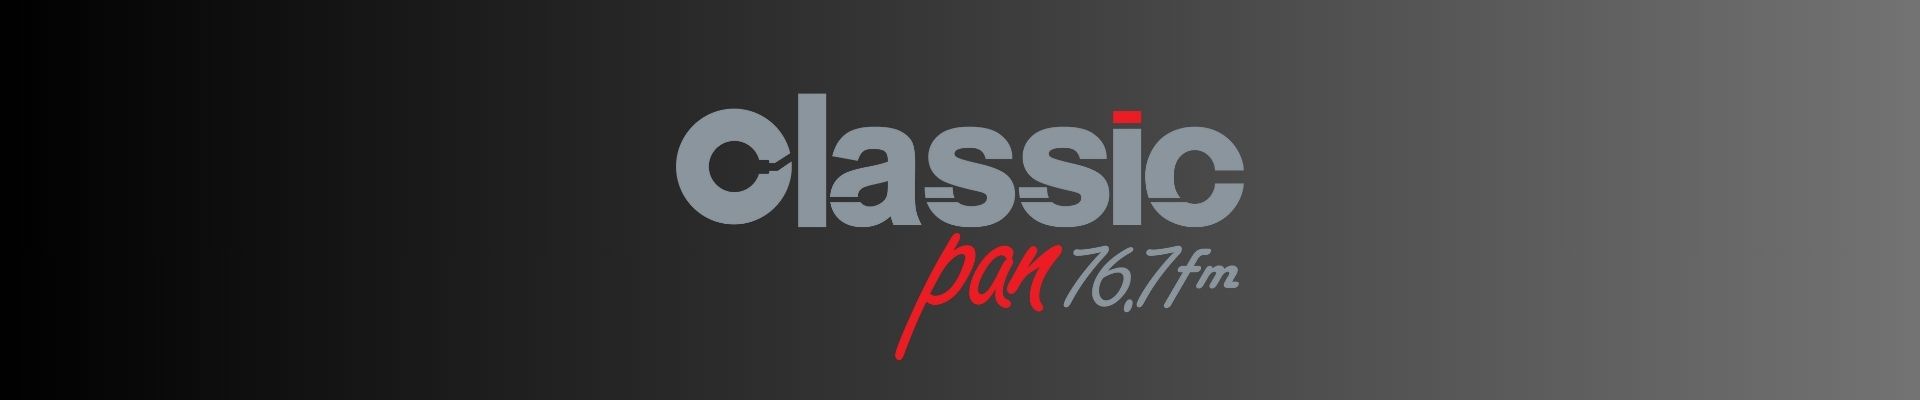 Classic Pan: Jovem Pan estreia nova rádio